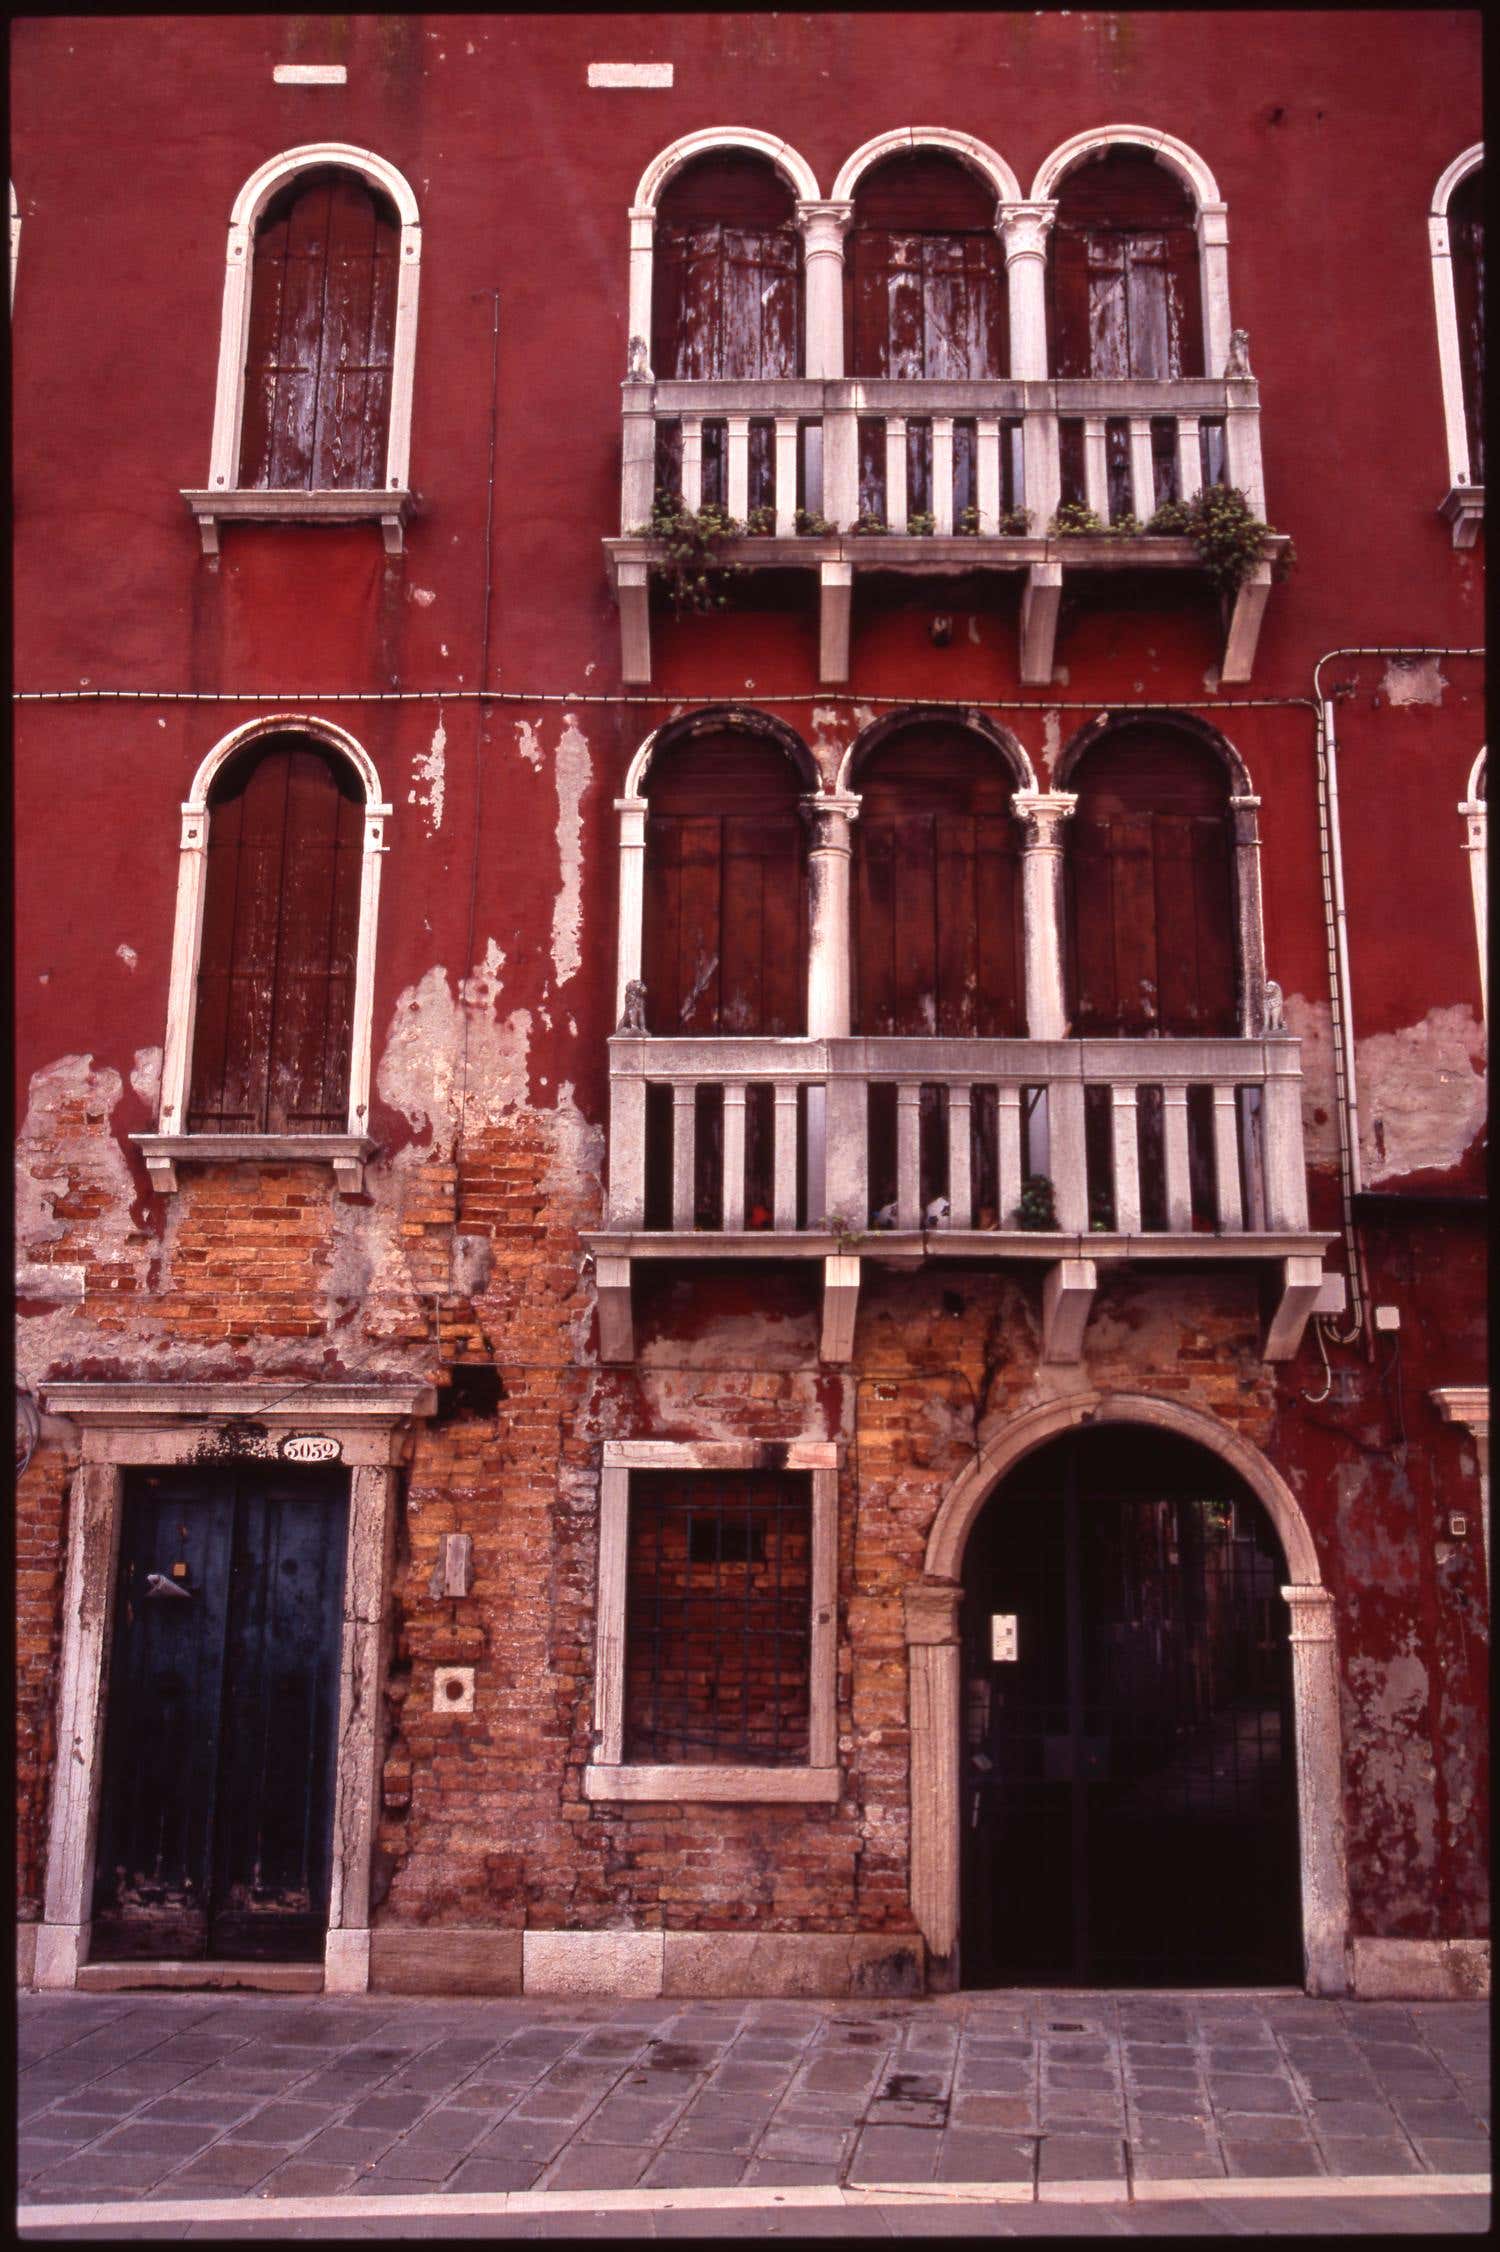 Edizione 1/10 - Balcone, Venezia, Italia, fotografia C.C.